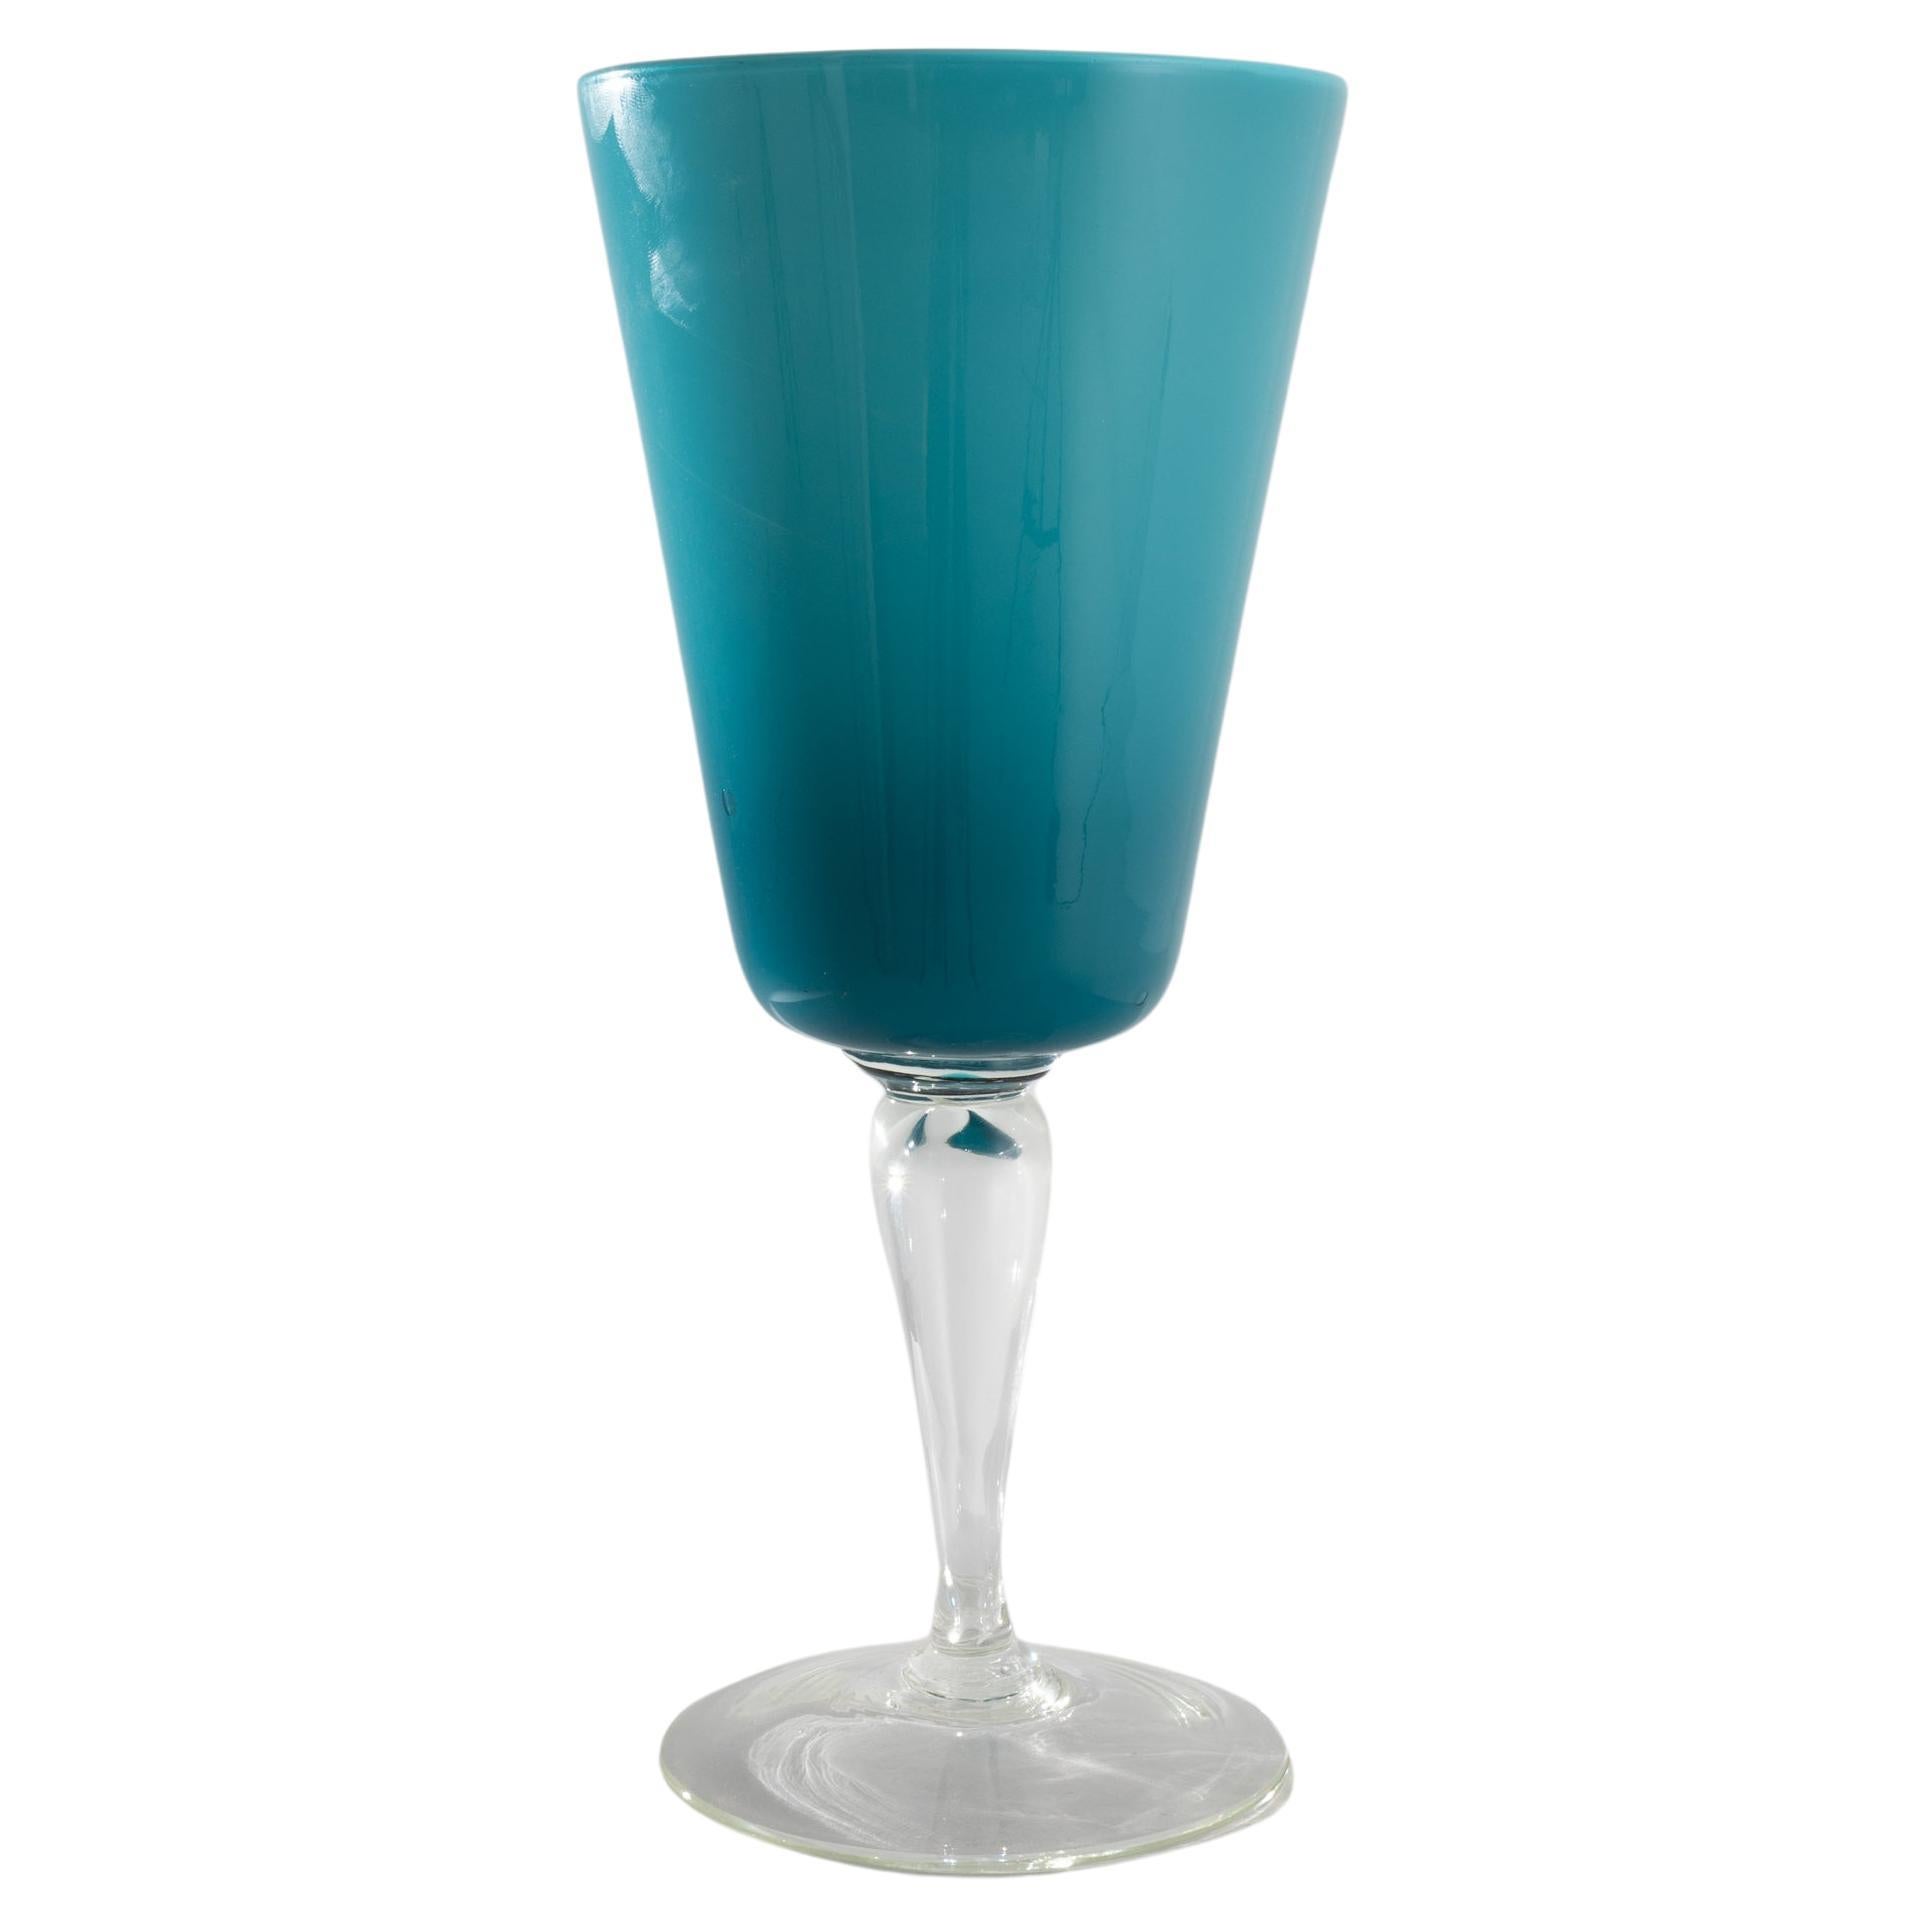 1960s Italian Teal Glass Goblet